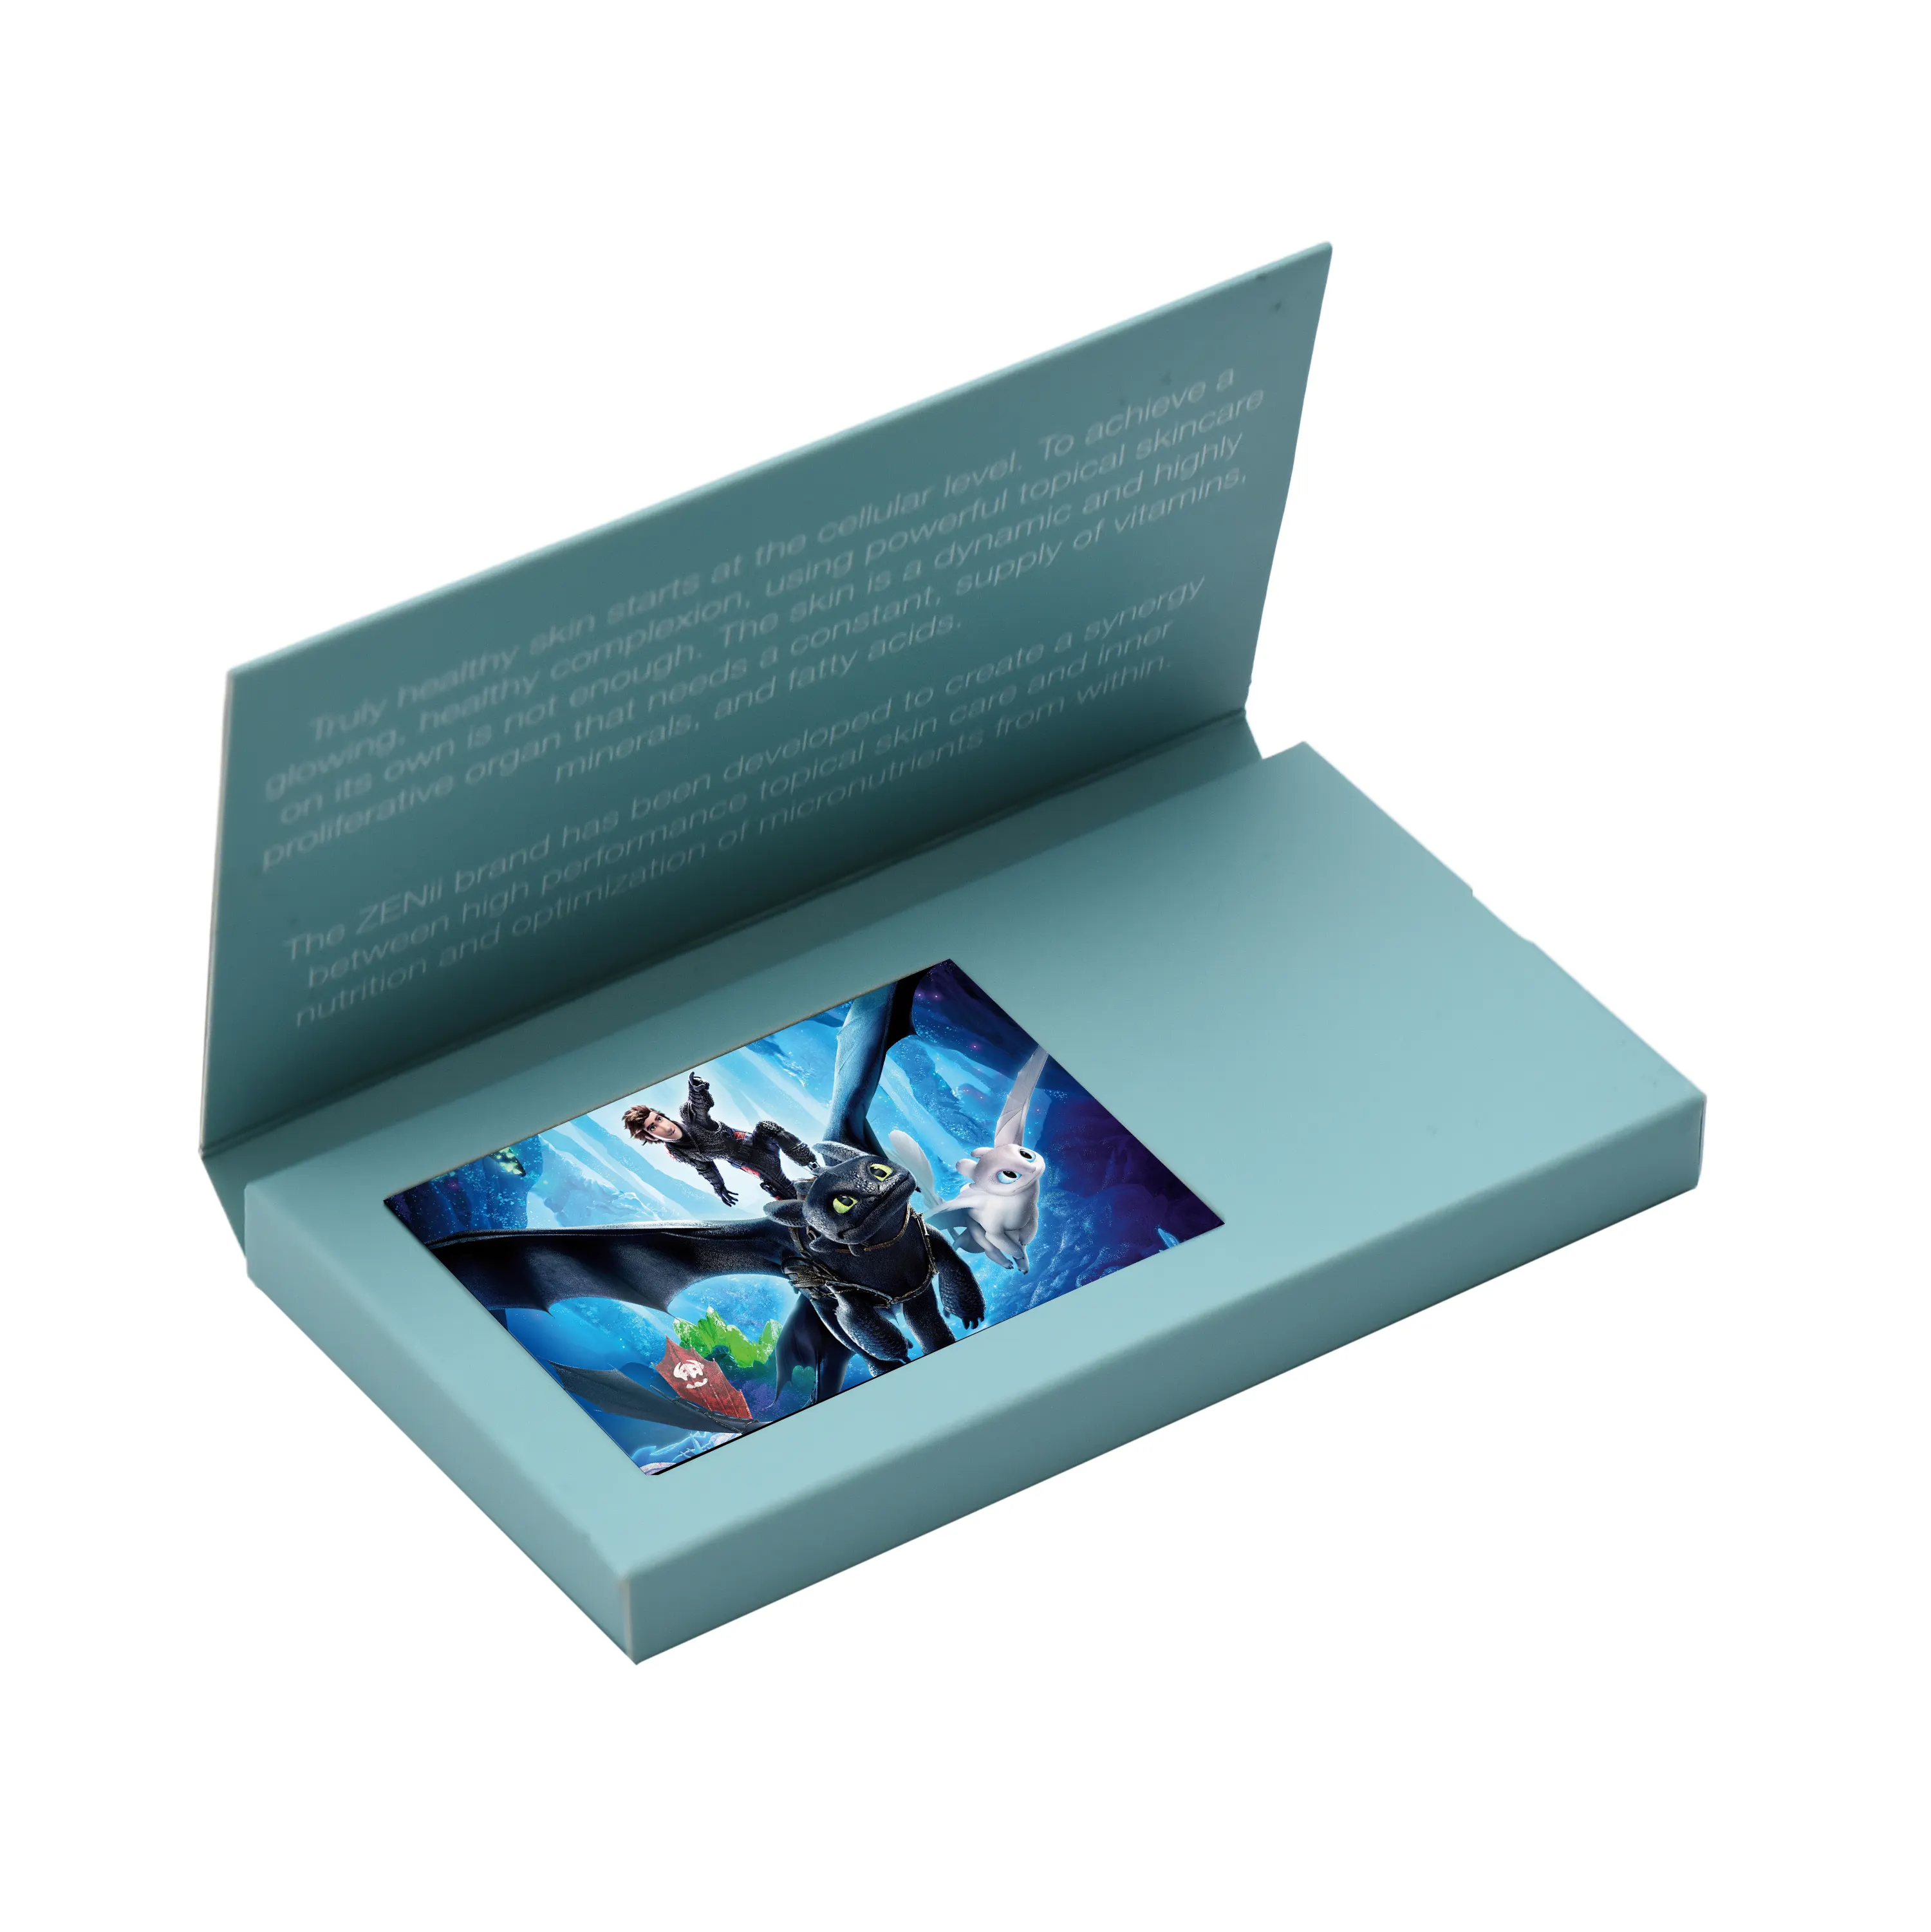 حار بيع Oem جودة طباعة الرقمية فيديو كتيب 2.4 بوصة بطاقة عمل رقمية ذات مقاطع فيديو مع شاشة Lcd